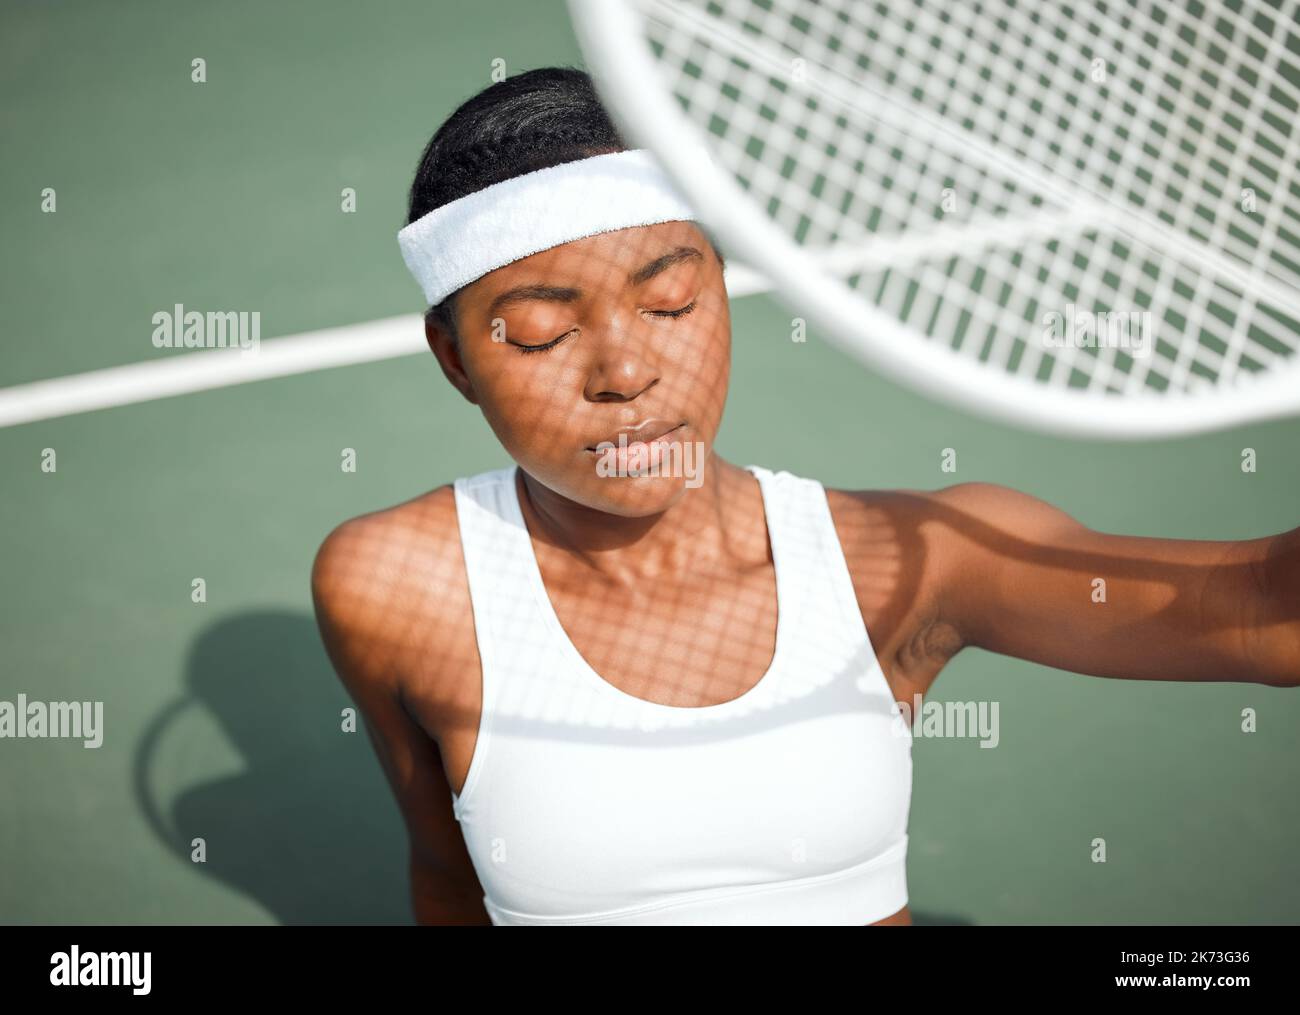 Sie leuchtet anders. Eine sportliche junge Frau, die ihr Gesicht mit einem Tennisschläger auf einem Platz vor der Sonne schützt. Stockfoto